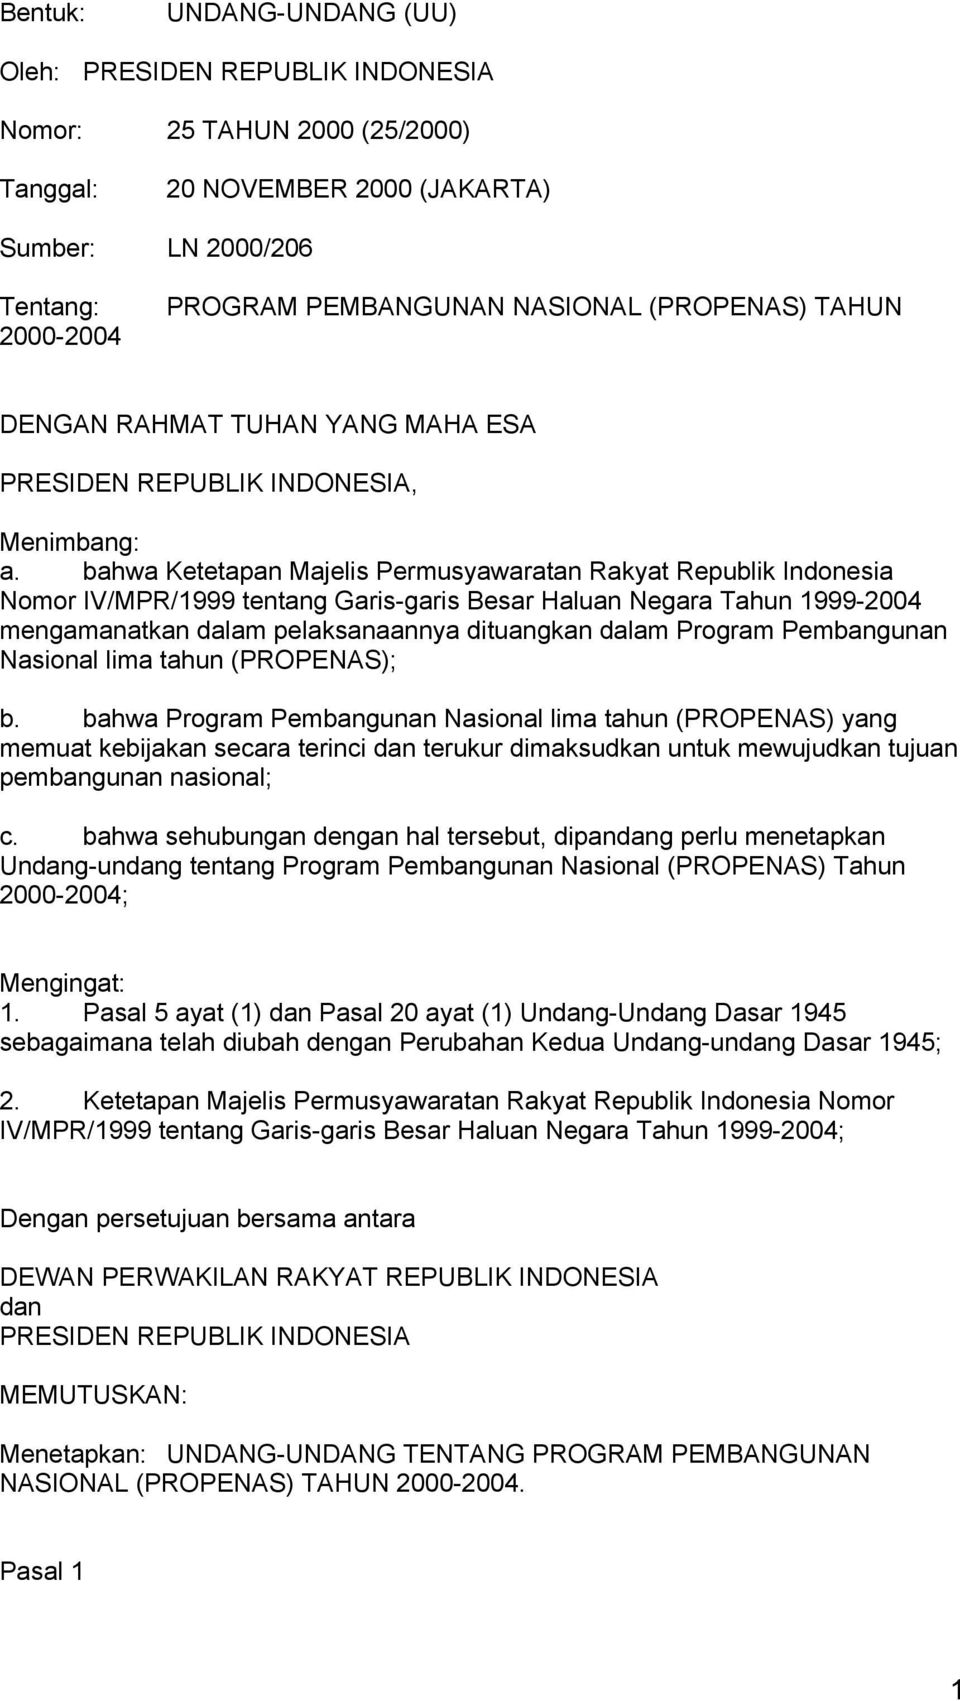 bahwa Ketetapan Majelis Permusyawaratan Rakyat Republik Indonesia Nomor IV/MPR/1999 tentang Garis-garis Besar Haluan Negara Tahun 1999-2004 mengamanatkan dalam pelaksanaannya dituangkan dalam Program